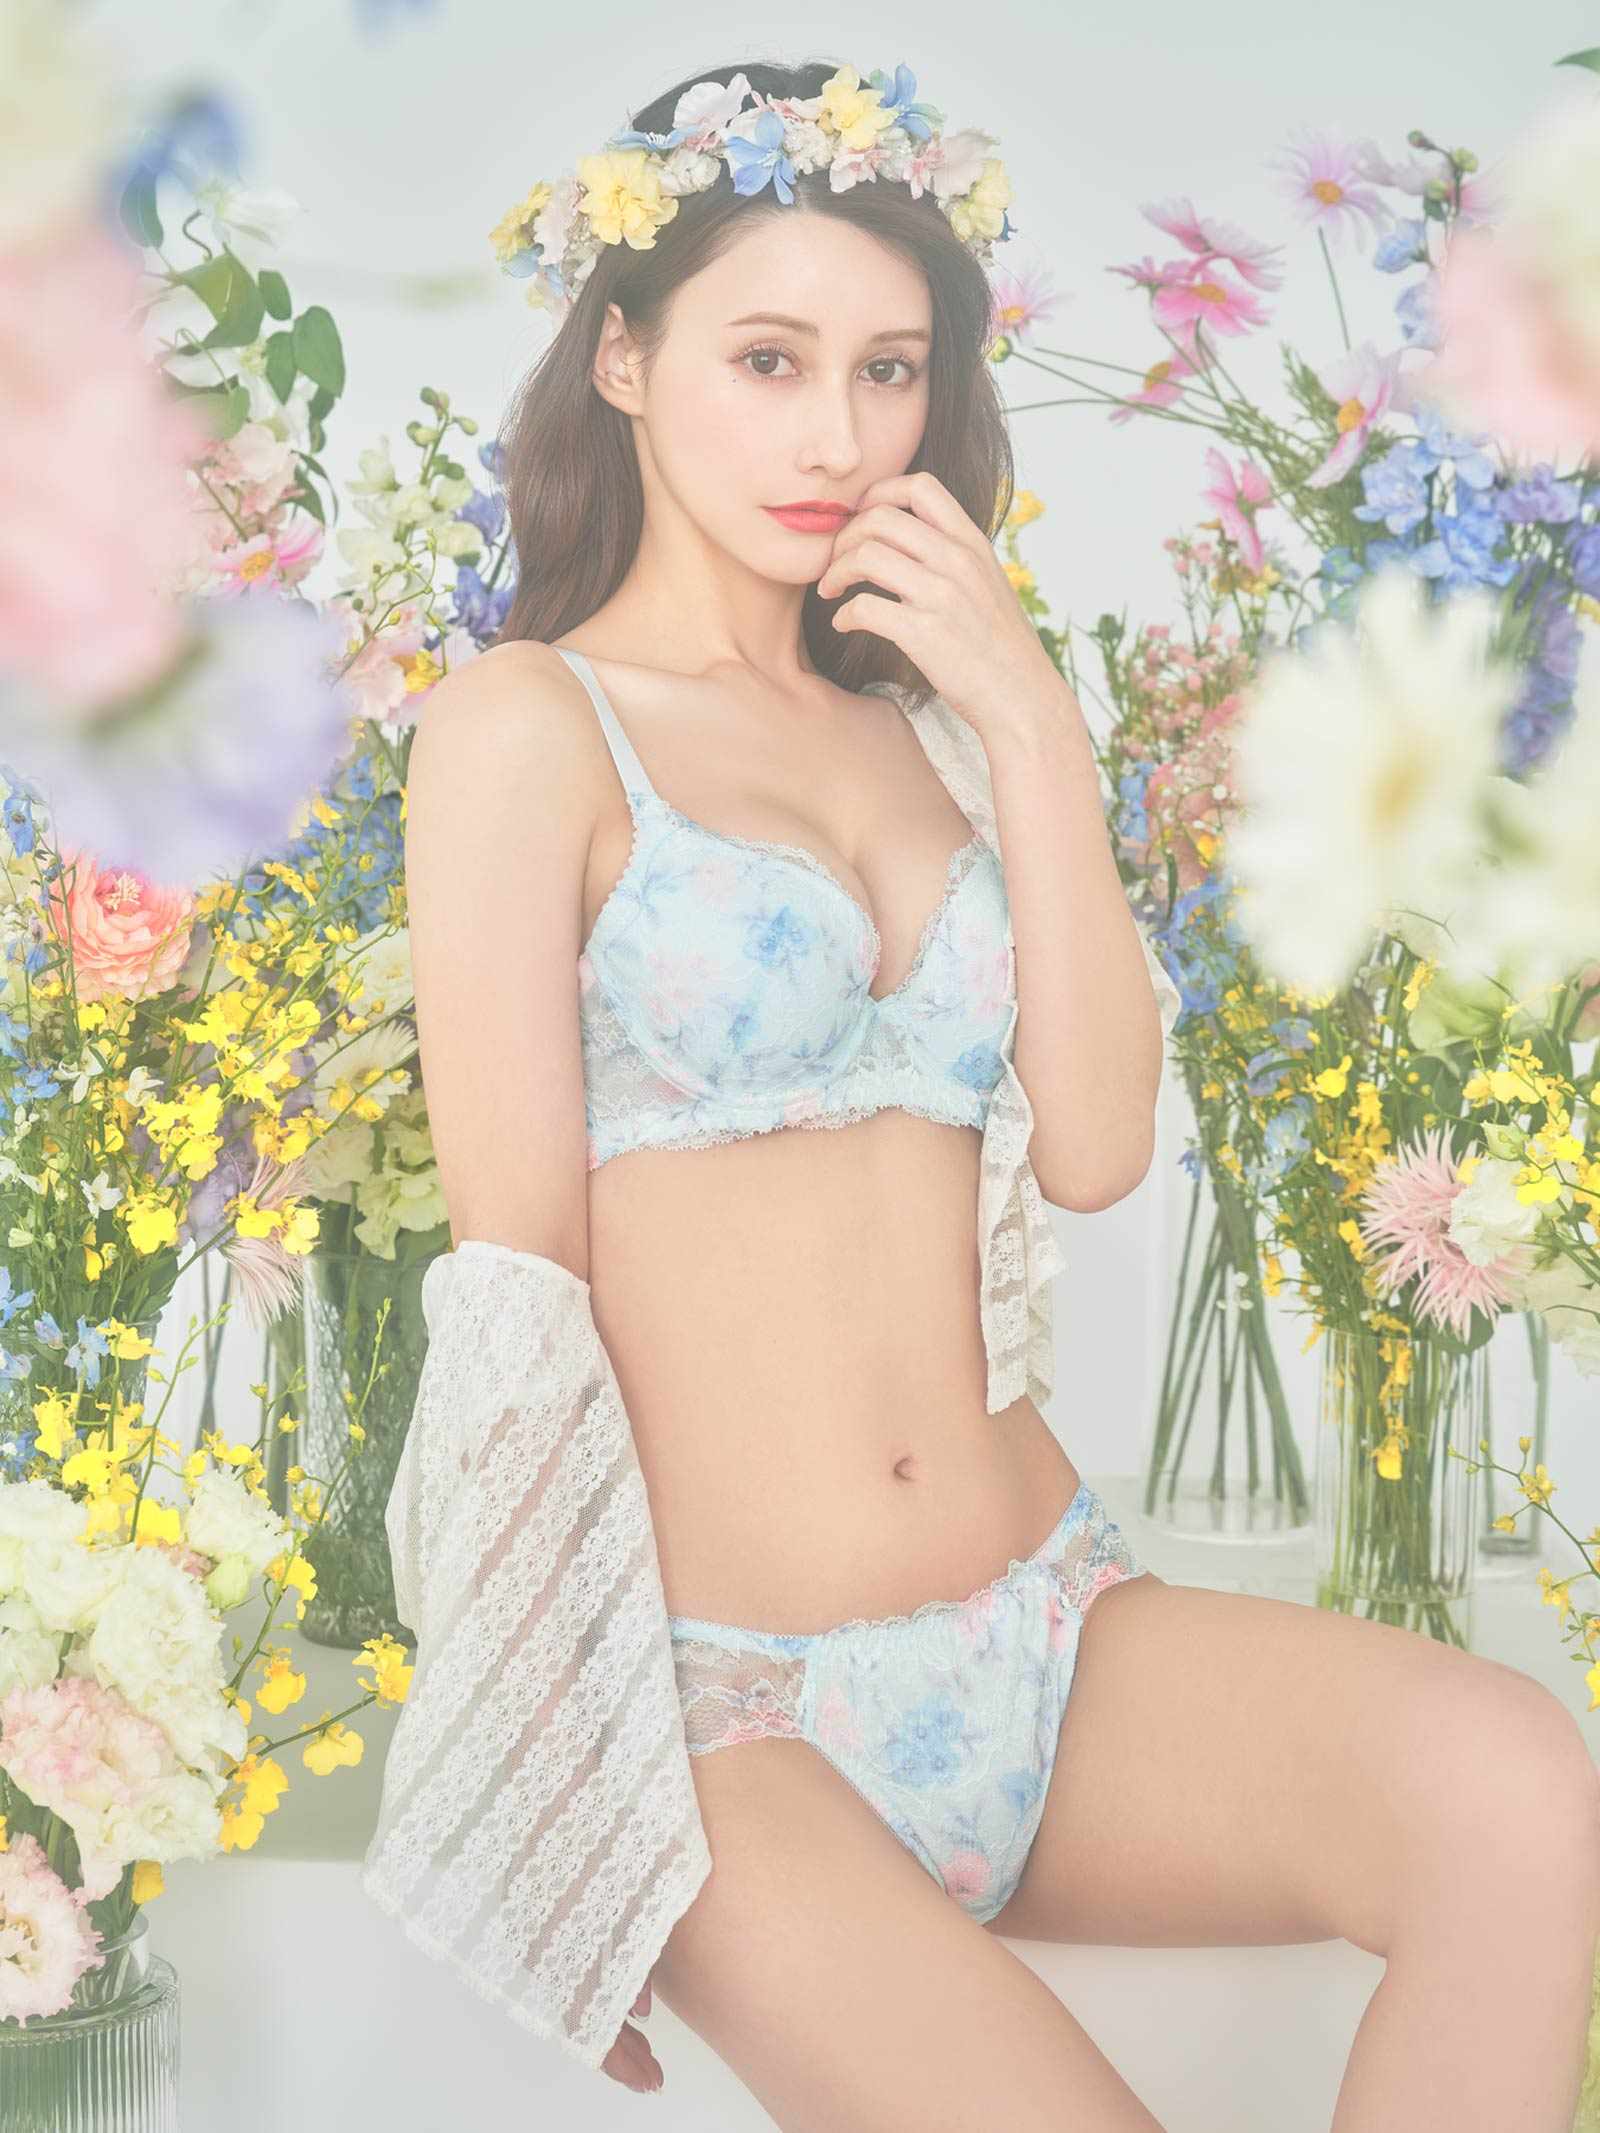 【ダレノガレ明美プロデュース/GARRONE】Flower Crown Print Shorts  フラワークラウンプリントショーツ